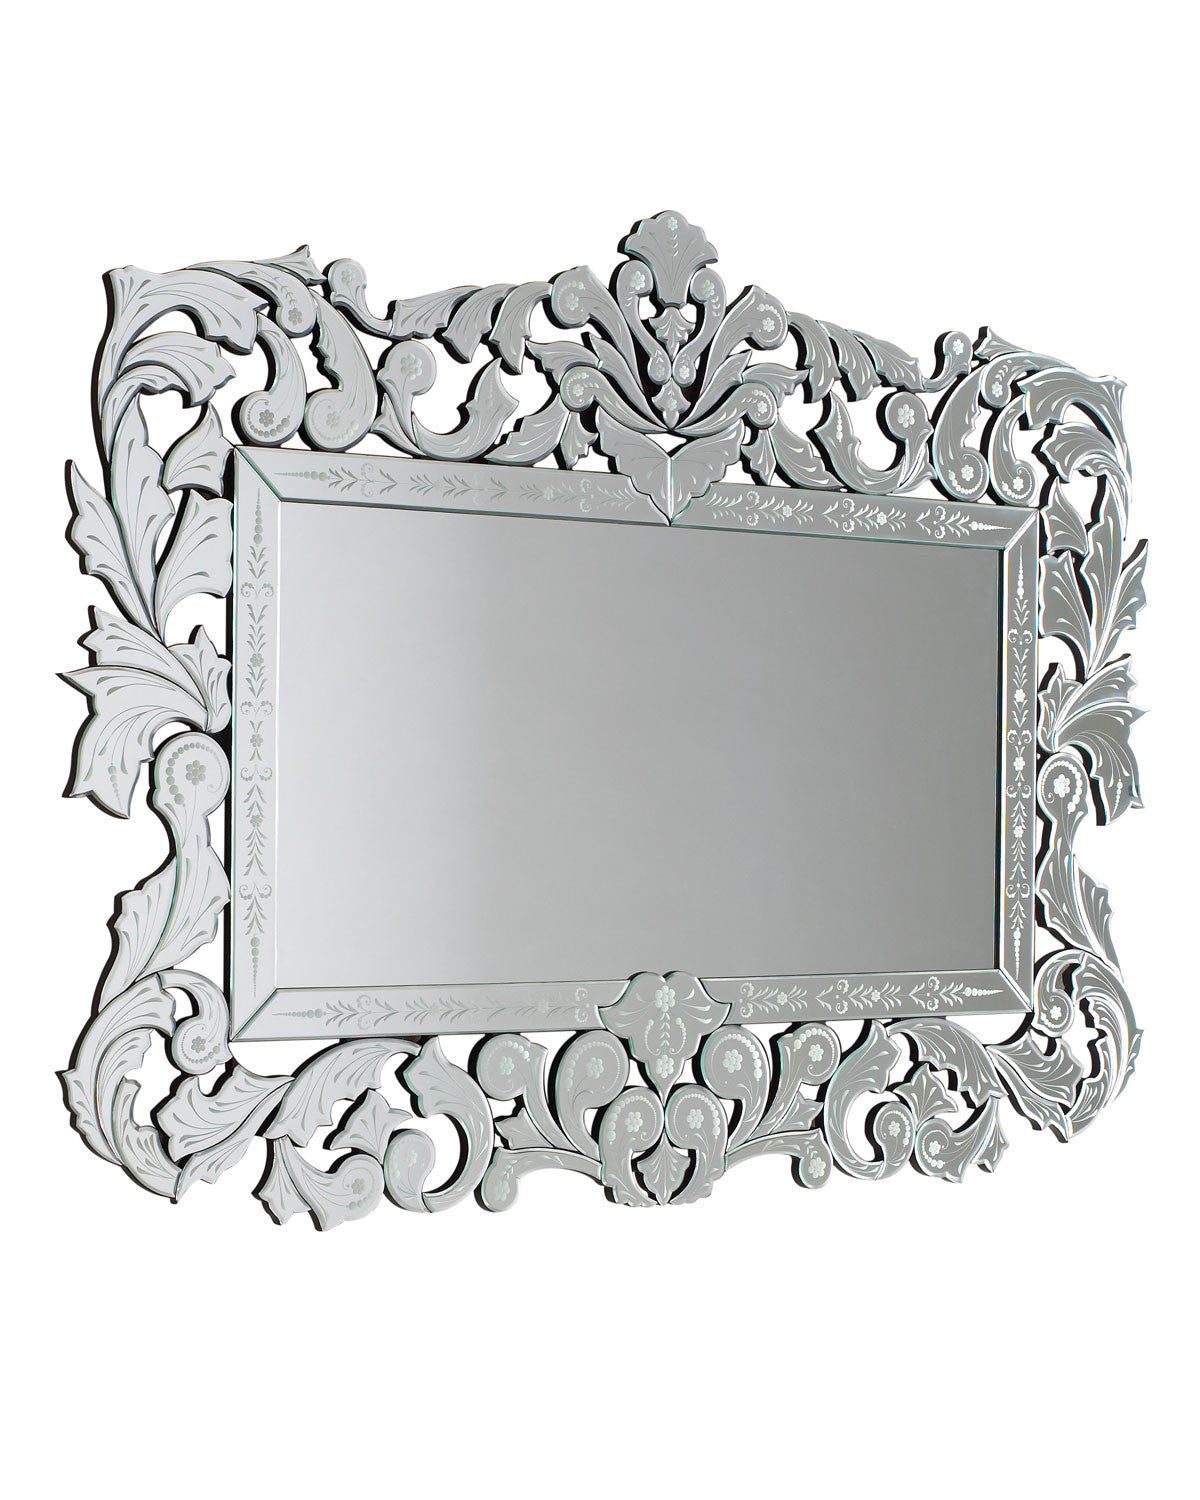 Прямоугольное зеркало в венецианском стиле "Фэйбл" (на белом фоне)